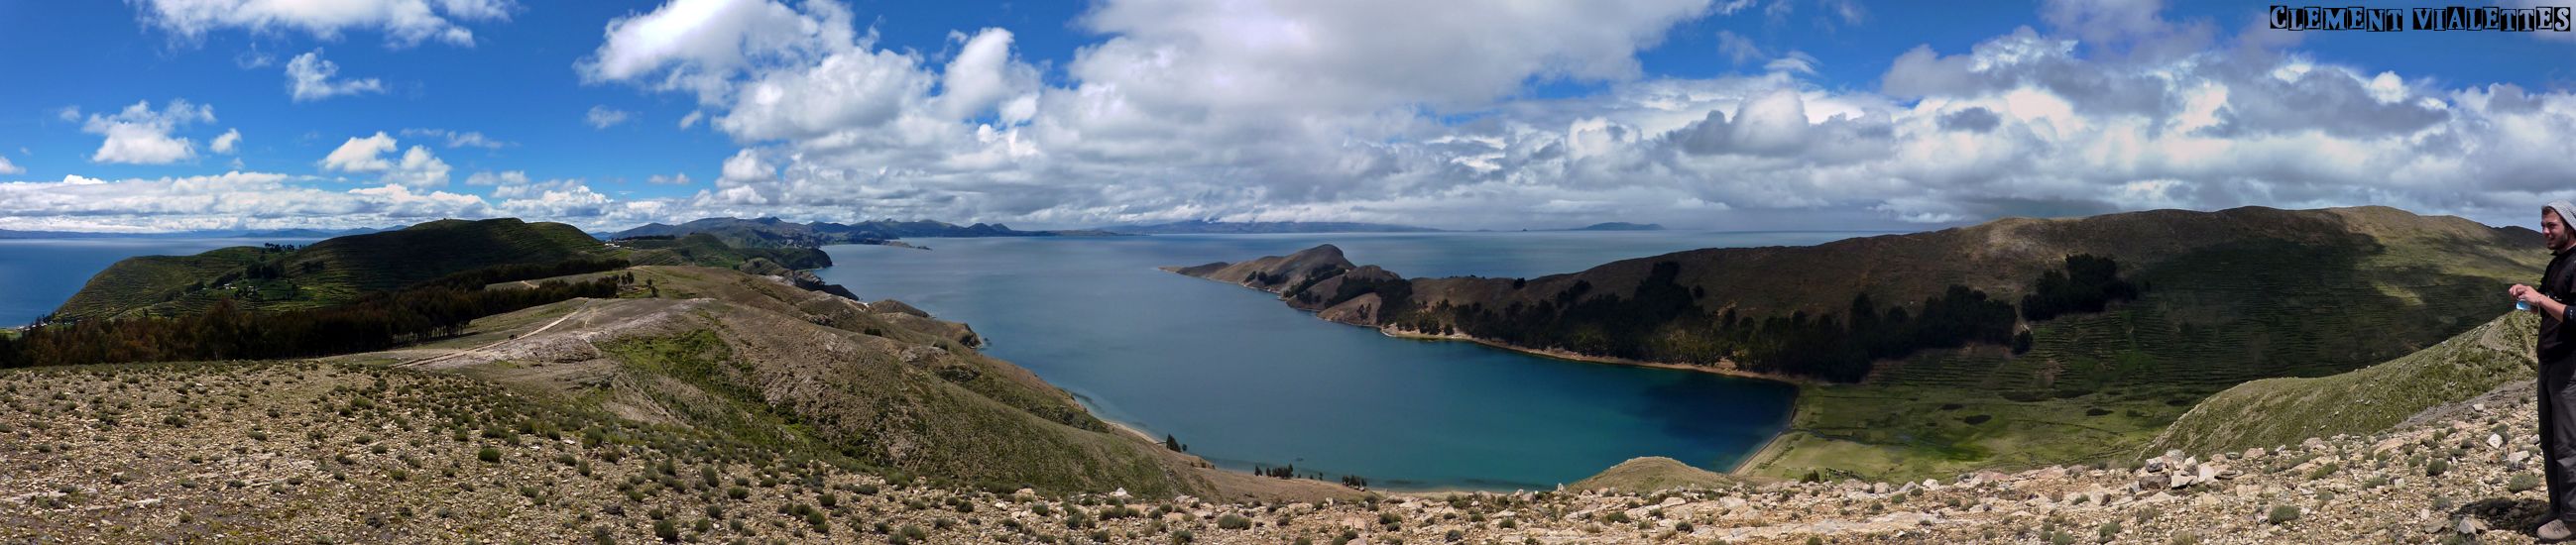 bolivie isla del sol panoramique